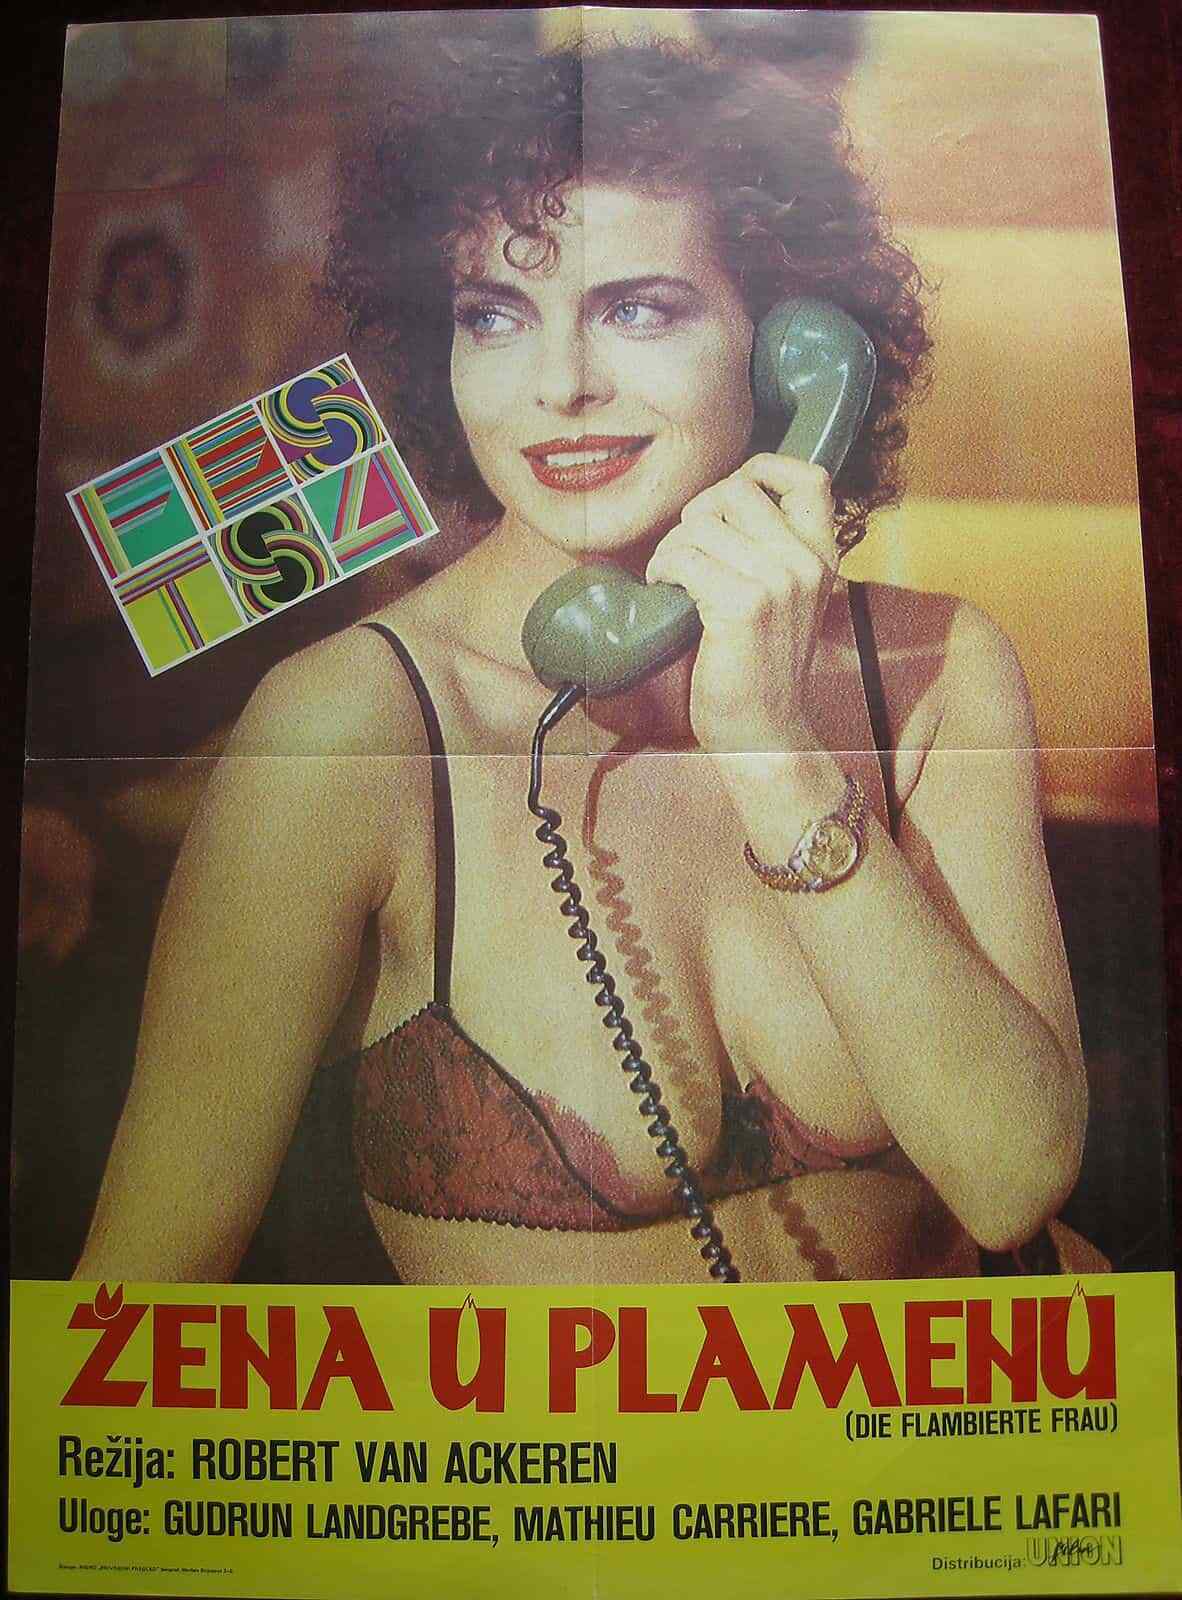 1983 5% OFF Original Movie Poster Woman Flames Frau Ge Fashion Flambierte Drama